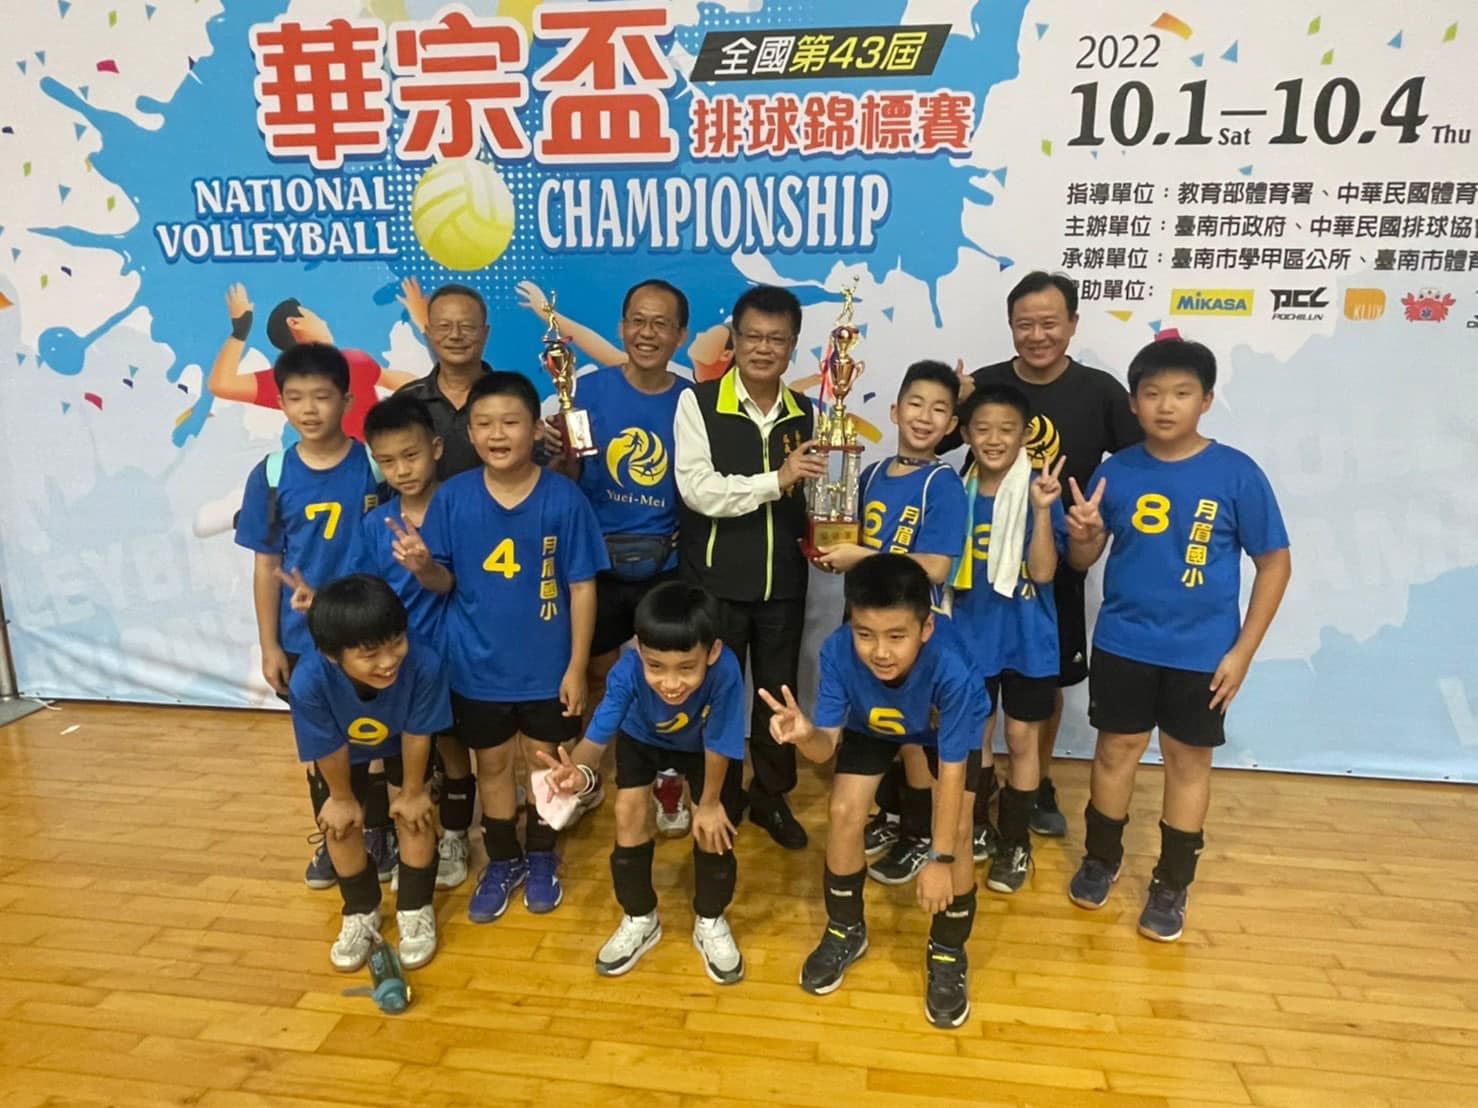 排球校隊參加華宗杯全國排球錦標賽榮獲國小五年級男童組全國冠軍!